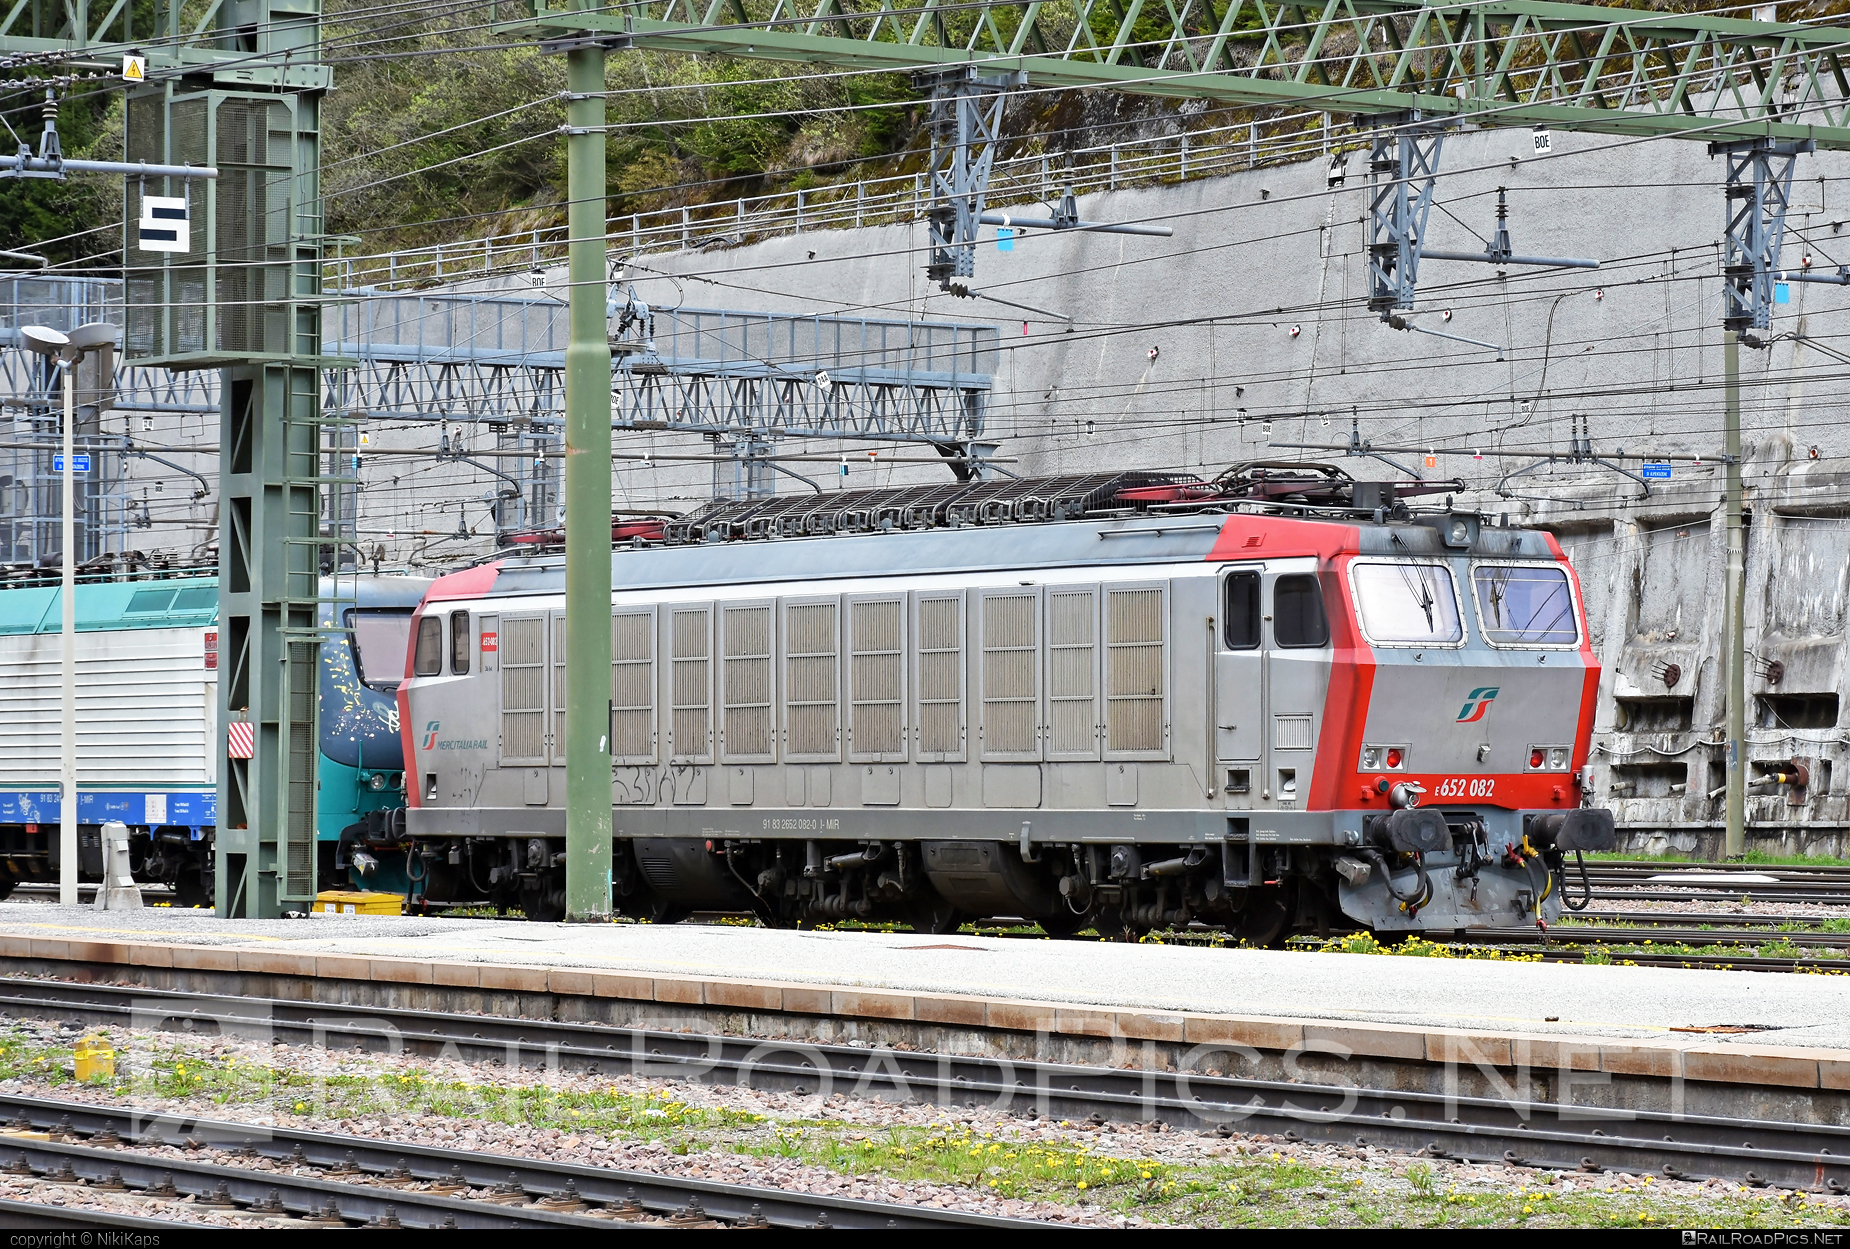 FS Class E.652 - E652 082 operated by Mercitalia Rail S.r.l. #e652 #ferroviedellostato #fs #fsClassE652 #fsitaliane #mercitalia #tigre